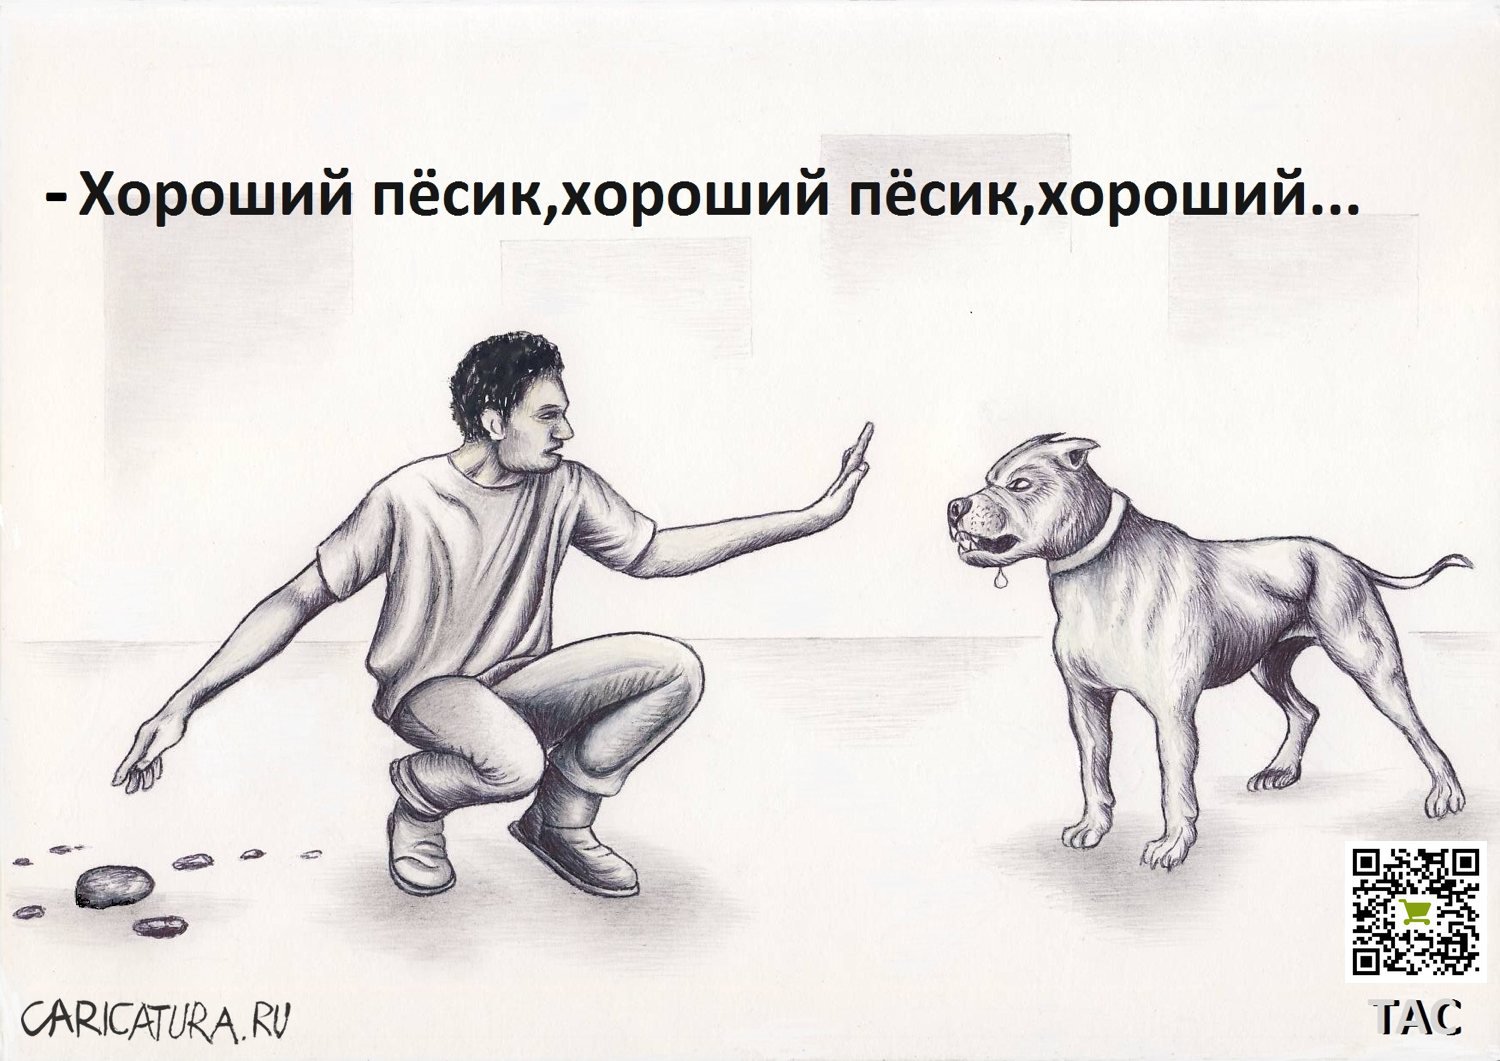 Карикатура "Дипломат", Александр Троицкий